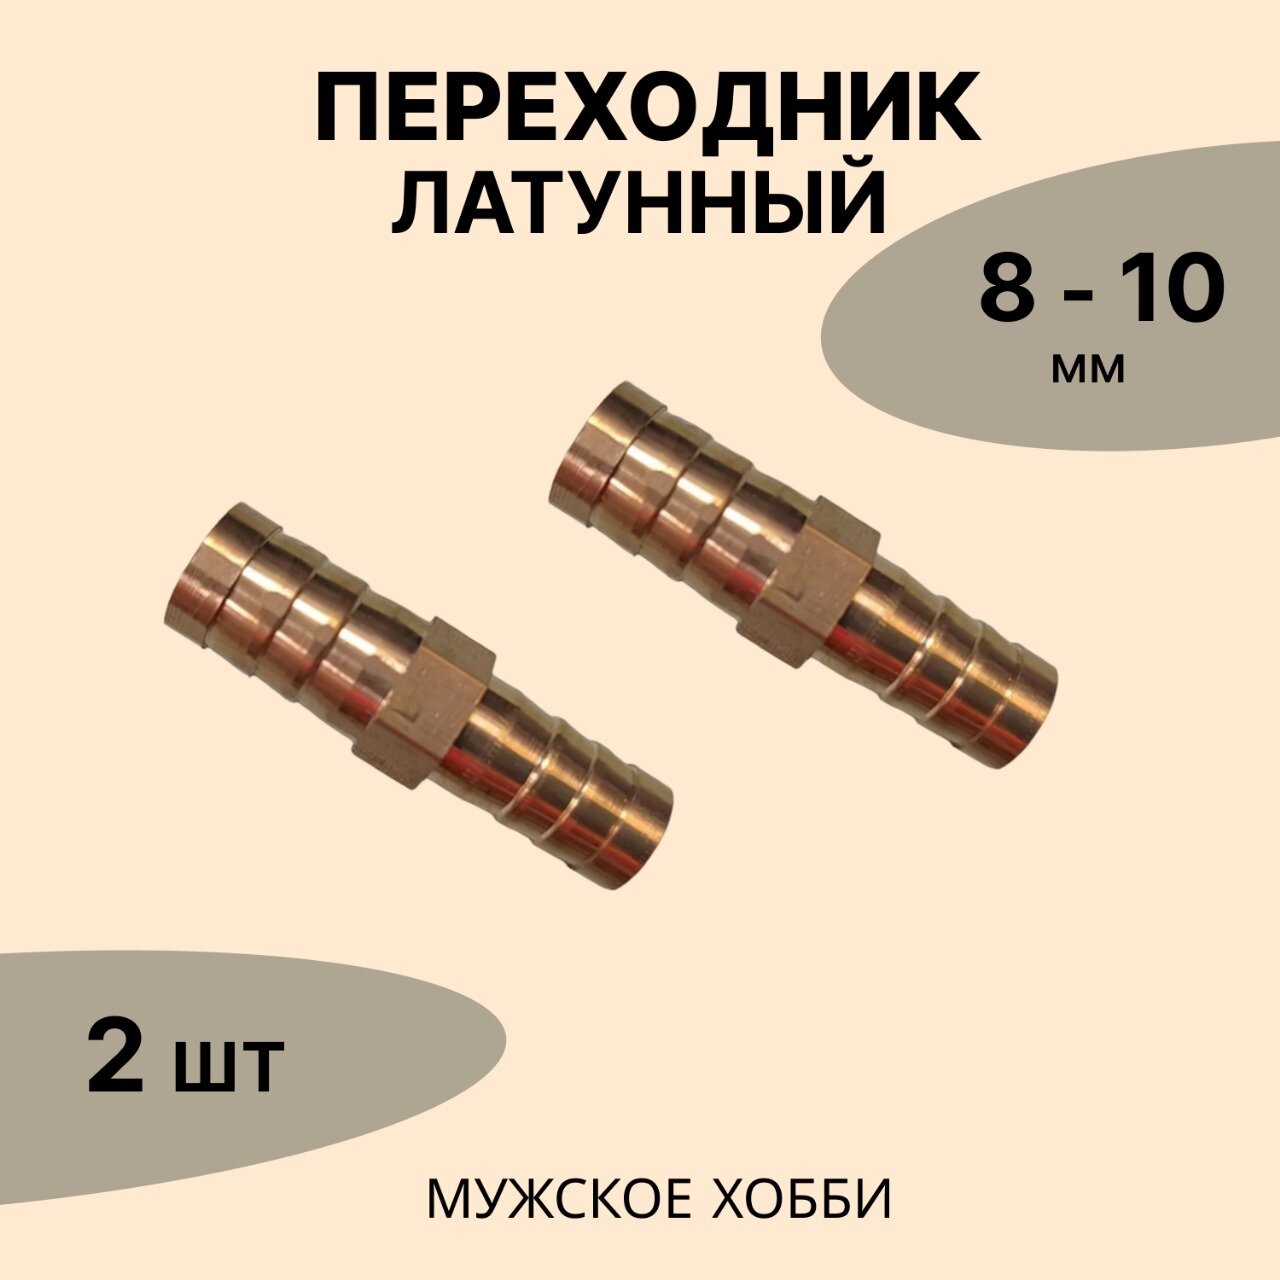 Переходник латунный 8-10 мм ( комплект 2 шт)